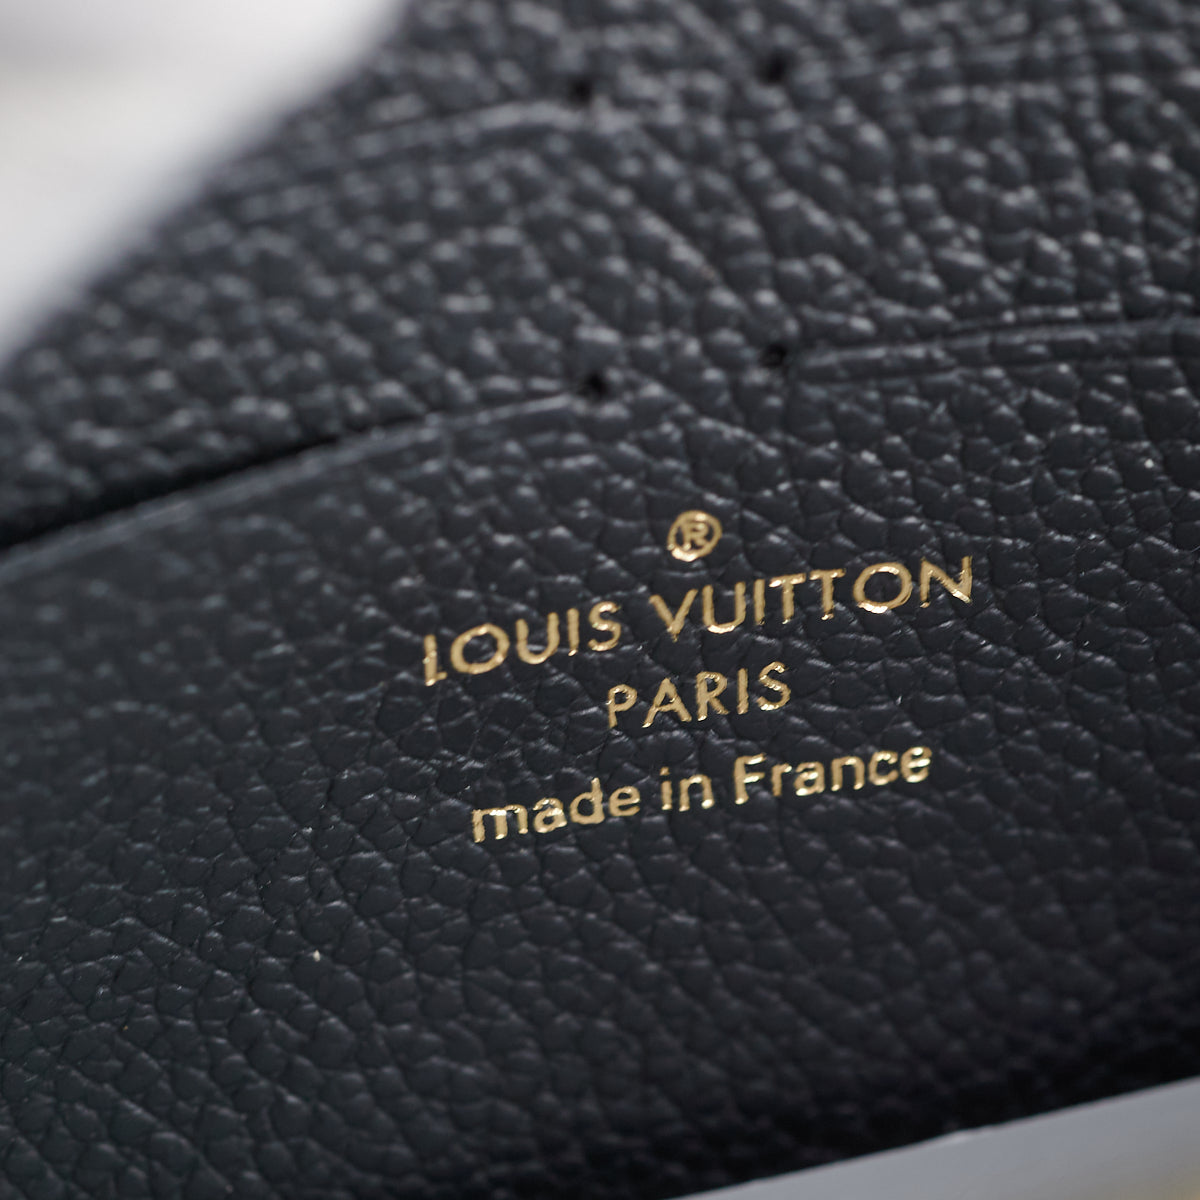 M59077 Louis Vuitton Monogram Empreinte Vavin Chain Wallet